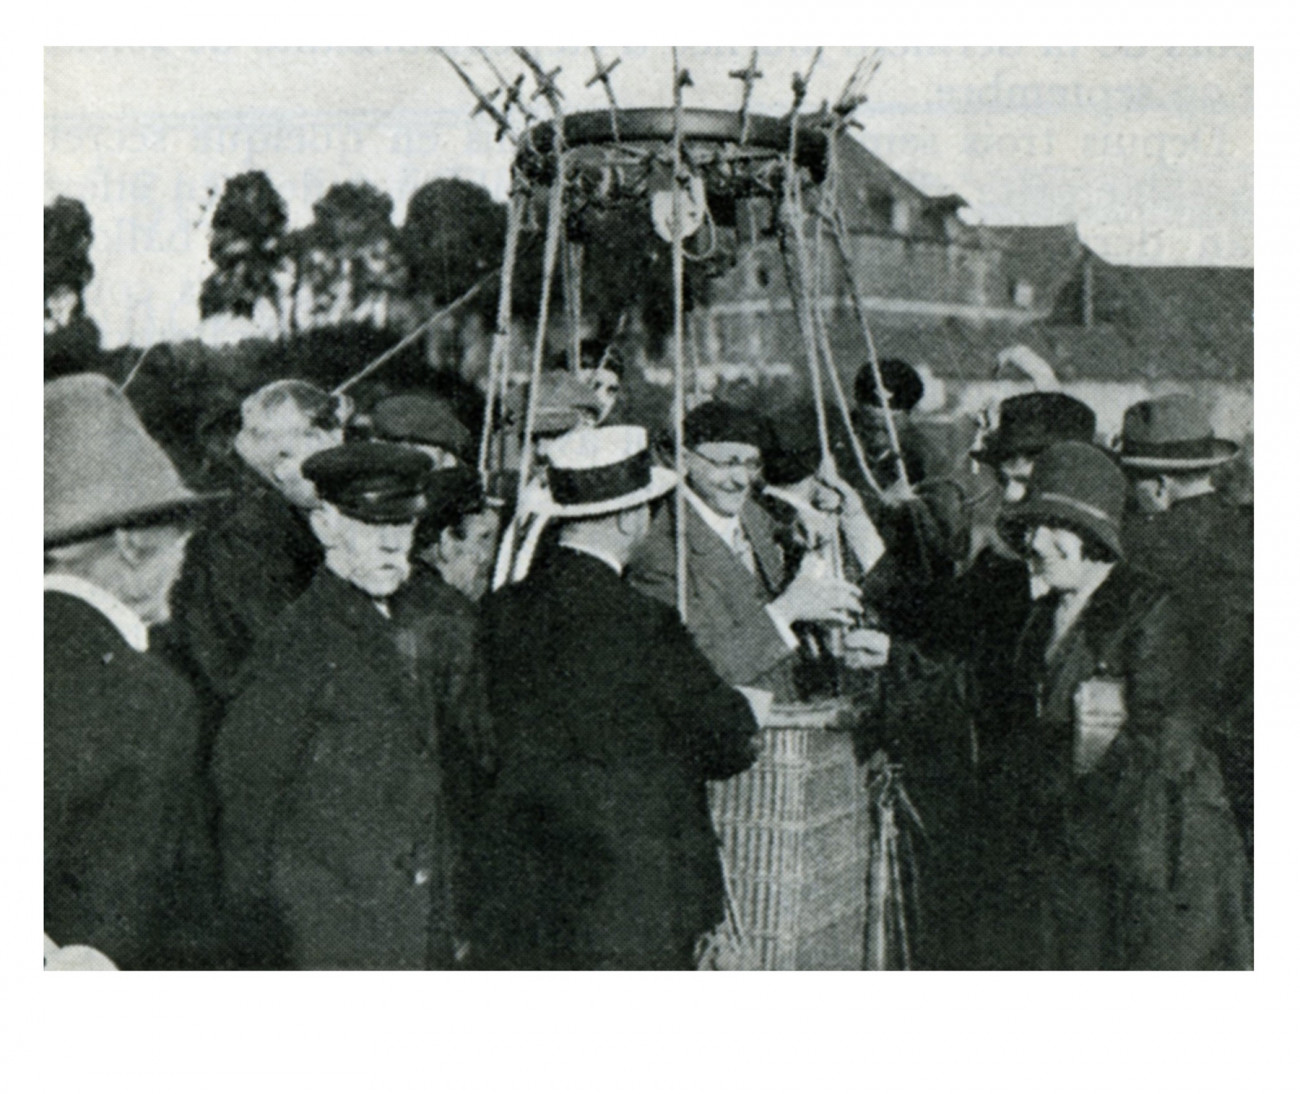 Départ de l’équipe de Radio PTT Nord en ballon pour Radio PTT Nord, 29 septembre 1929